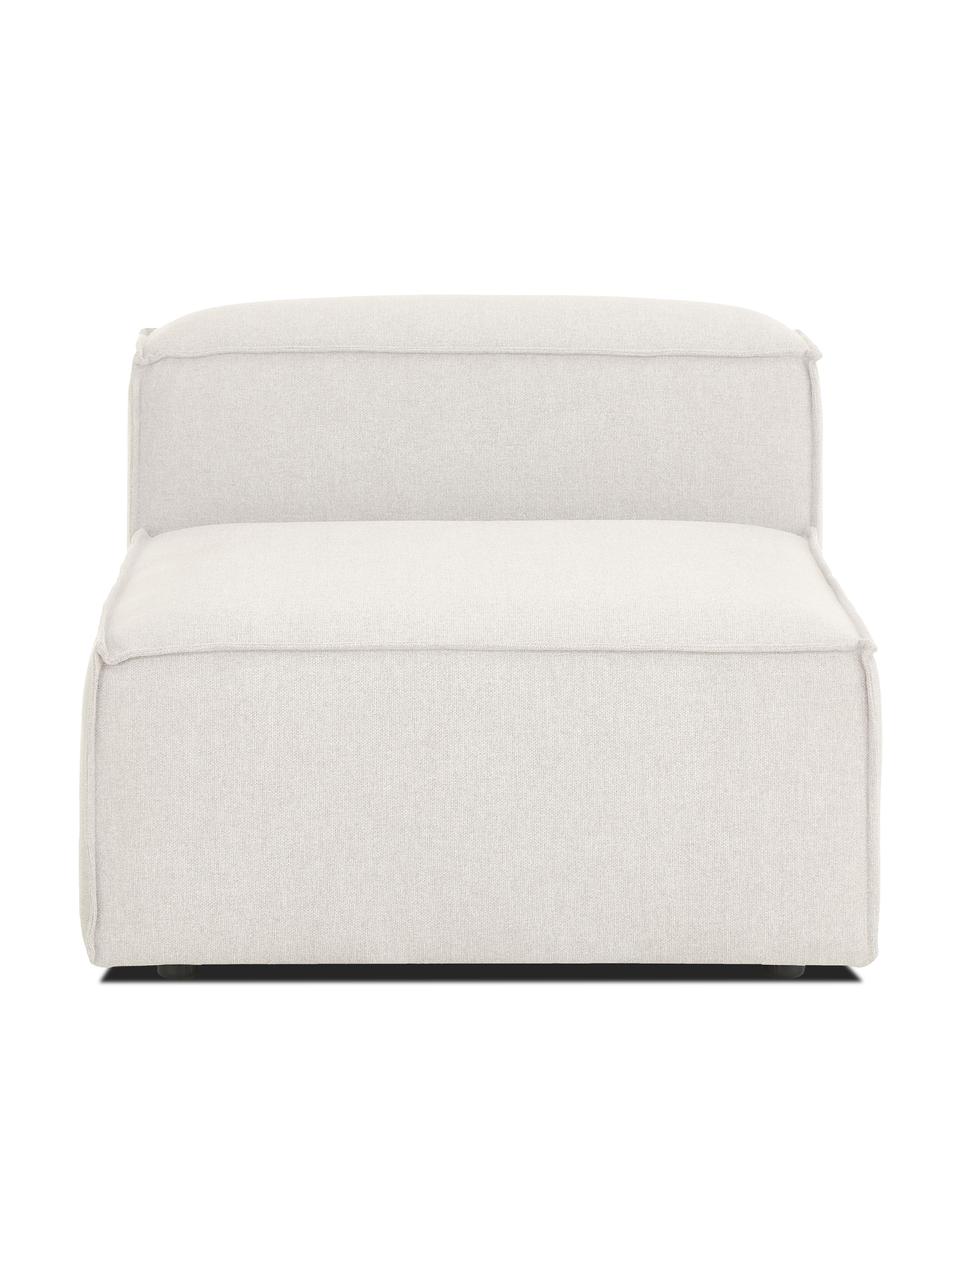 Chauffeuse pour canapé modulable beige Lennon, Tissu beige, larg. 89 x prof. 119 cm